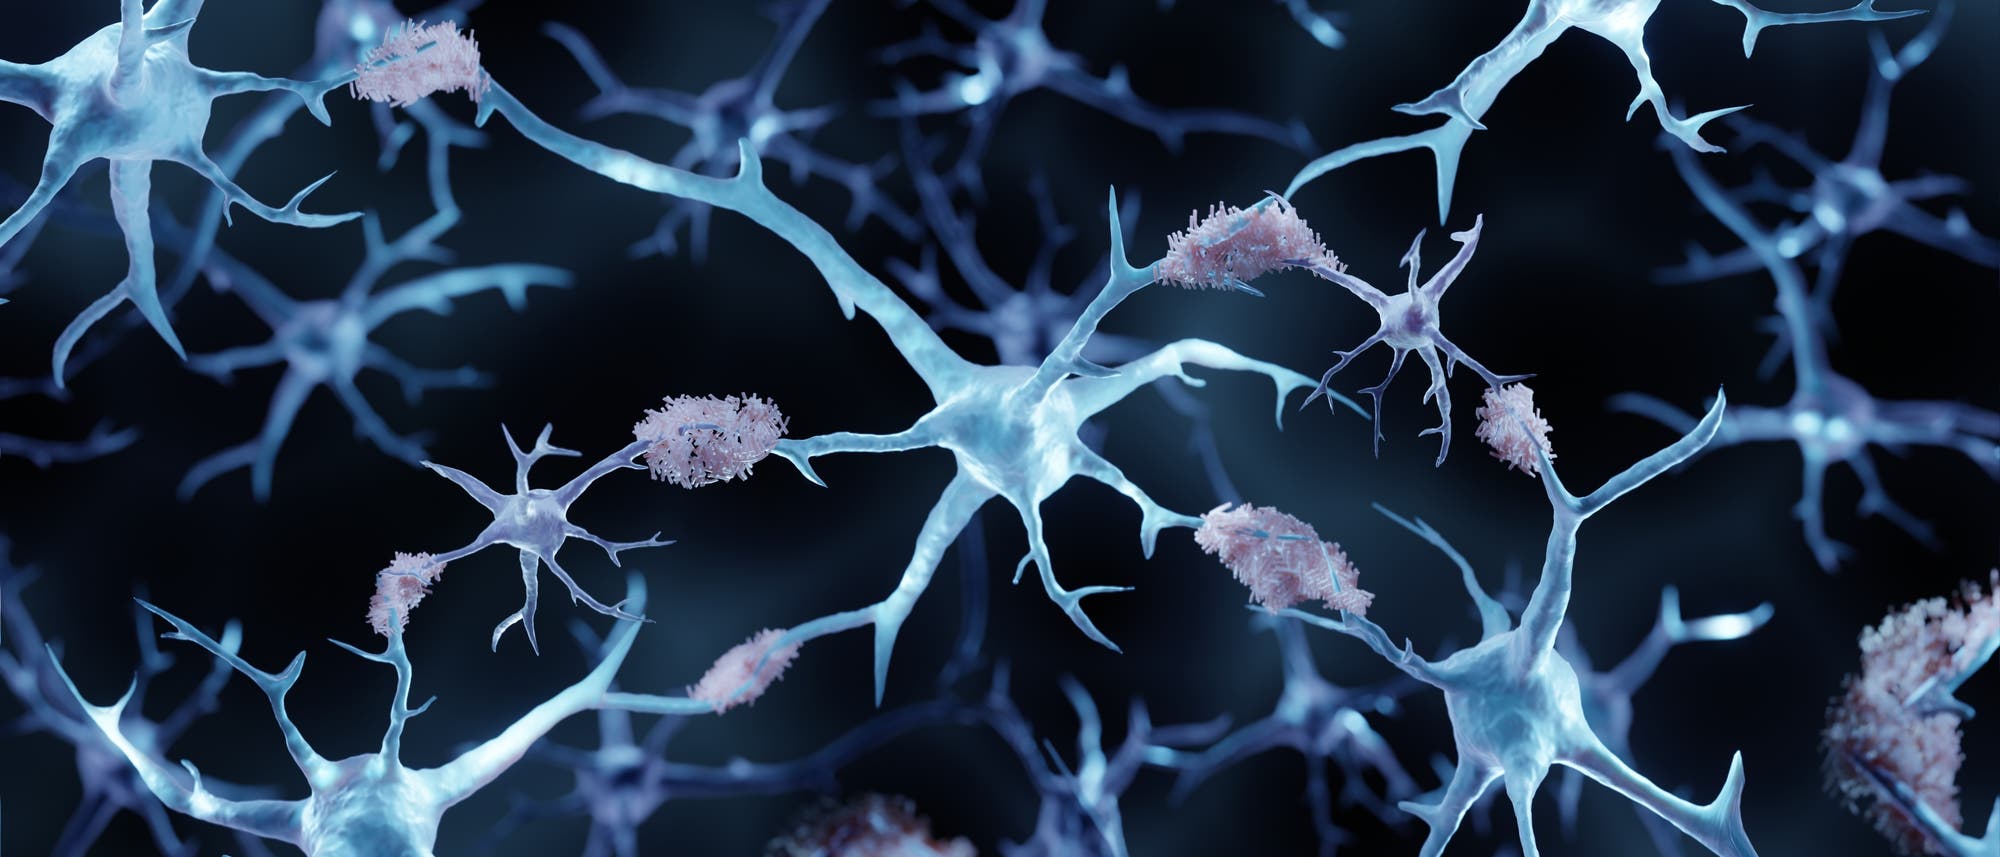 Illustration mit Nervenzellen, an denen sich verklumpte, stäbchenförmige Plaques abgelagert haben